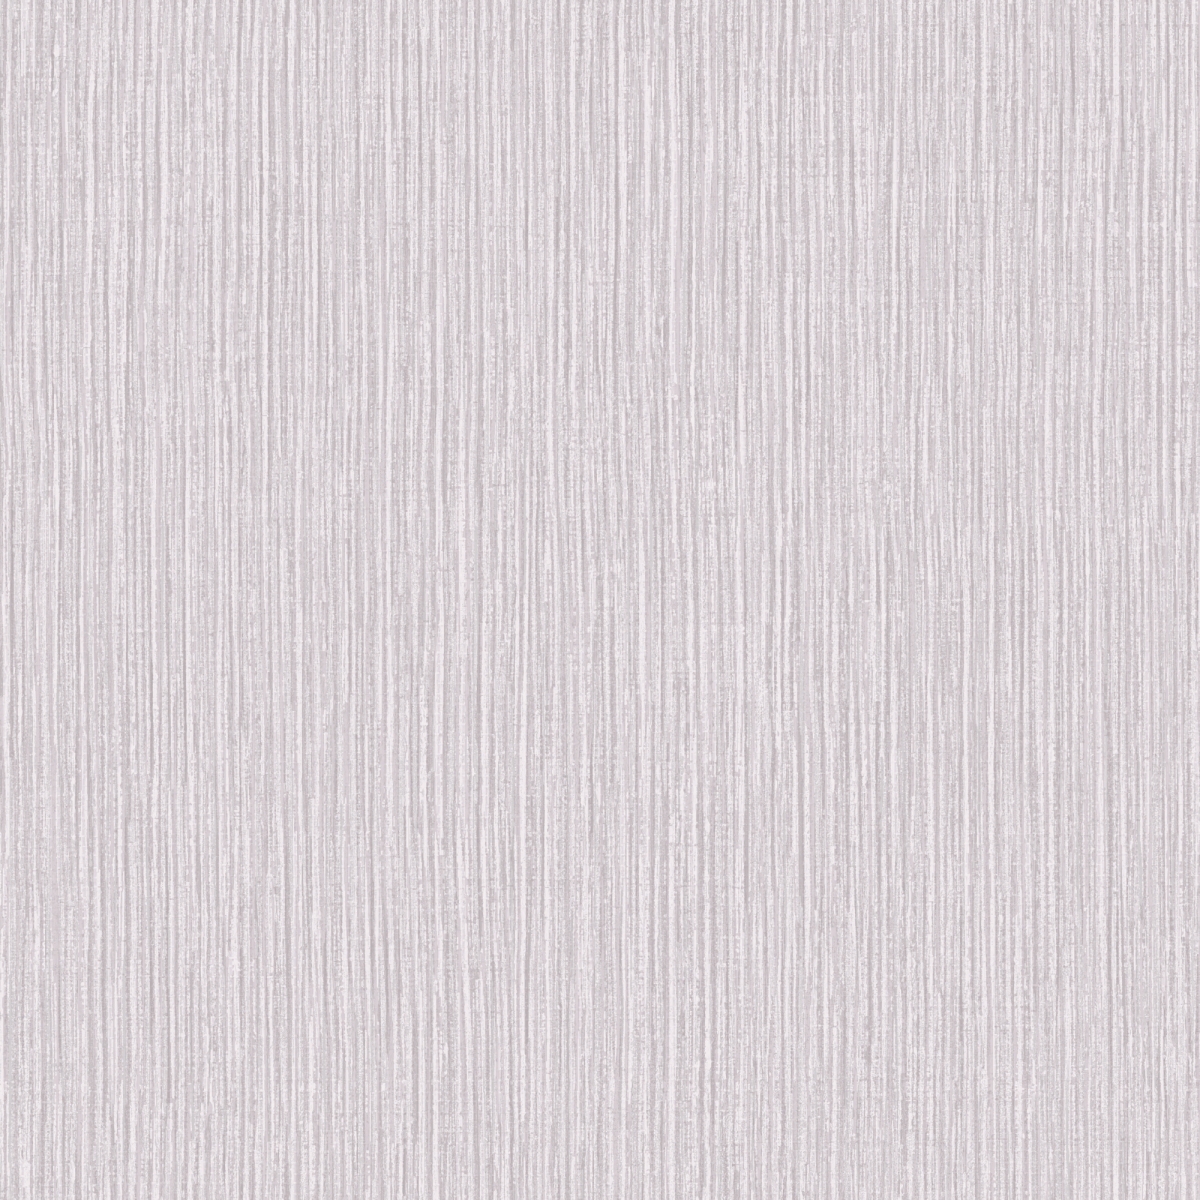 670901 Raffia Wallpaper, Silver